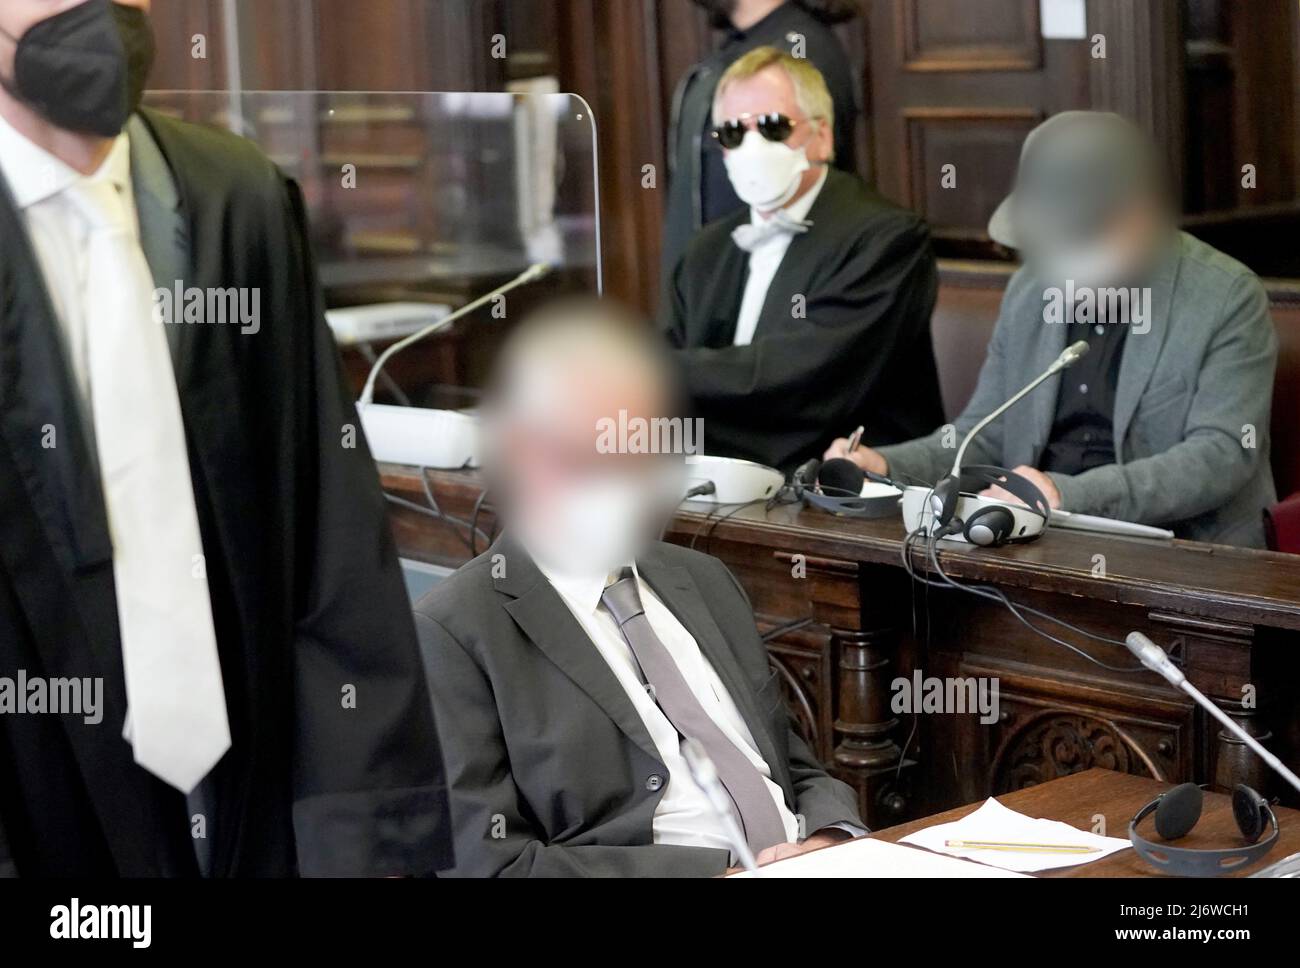 04 mai 2022, Hambourg: Les deux médecins accusés (devant et à droite) sont assis à côté de leurs avocats dans la salle d'audience de la Cour régionale, dans le bâtiment de justice pénale, au début du procès pour la mort d'un enfant après une opération. L'accusation accuse le chirurgien de 64 ans de lésions corporelles entraînant la mort et le copropriétaire de 68 ans de la pratique de l'aide et de la complicité par omission. L'homme de 64 ans aurait opéré un jeune de neuf ans sous anesthésie générale dans un cabinet médical le 14 mars 2007, afin d'améliorer la respiration nasale du garçon. Dans la salle de récupération, il a souffert Banque D'Images